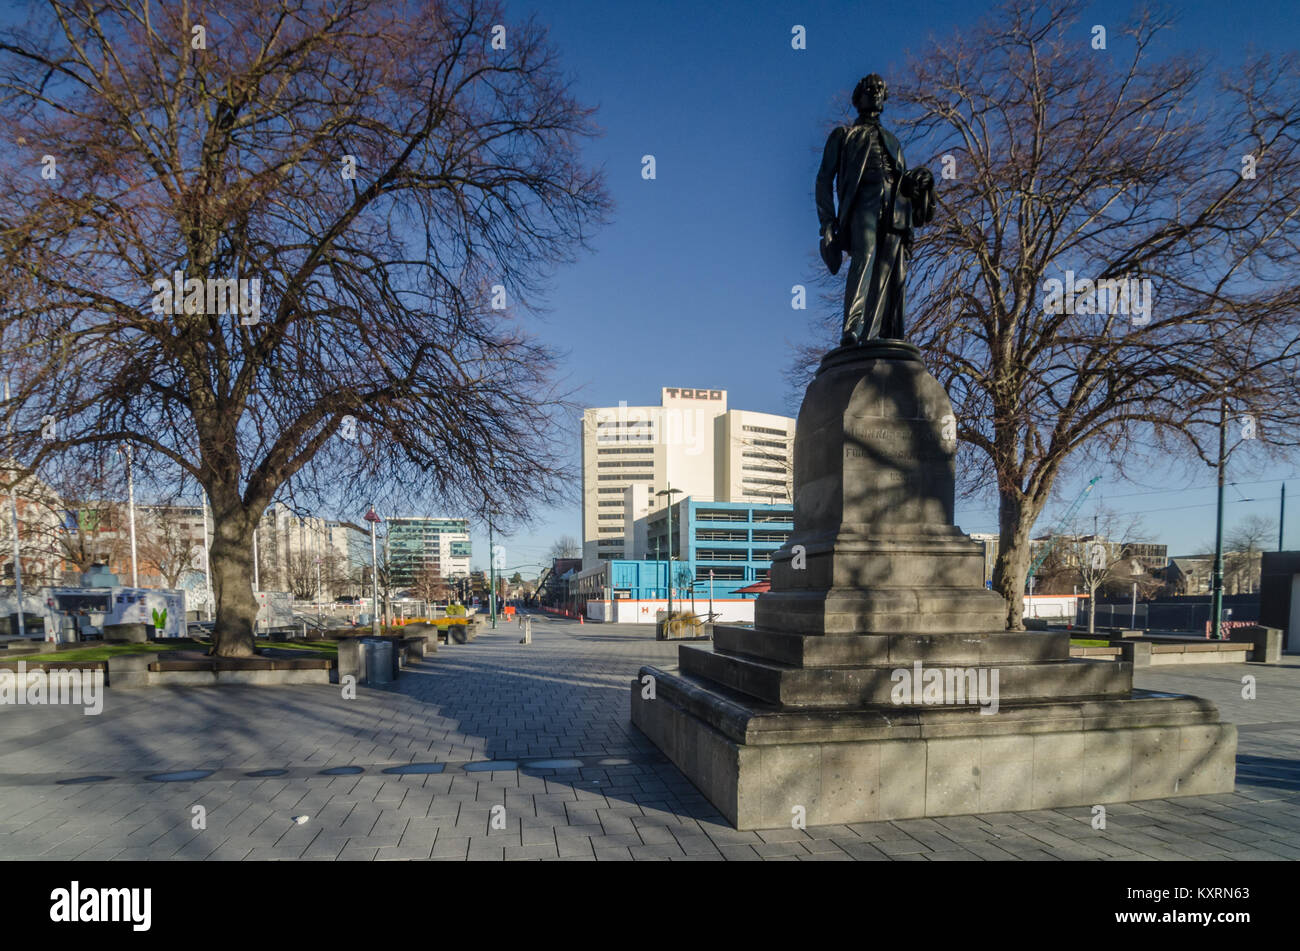 John Robert Godley Statue in Christchurch. Godley war ein irischer Politiker und Bürokraten, er gilt als der Gründer von Canterbury, Neuseeland. Stockfoto